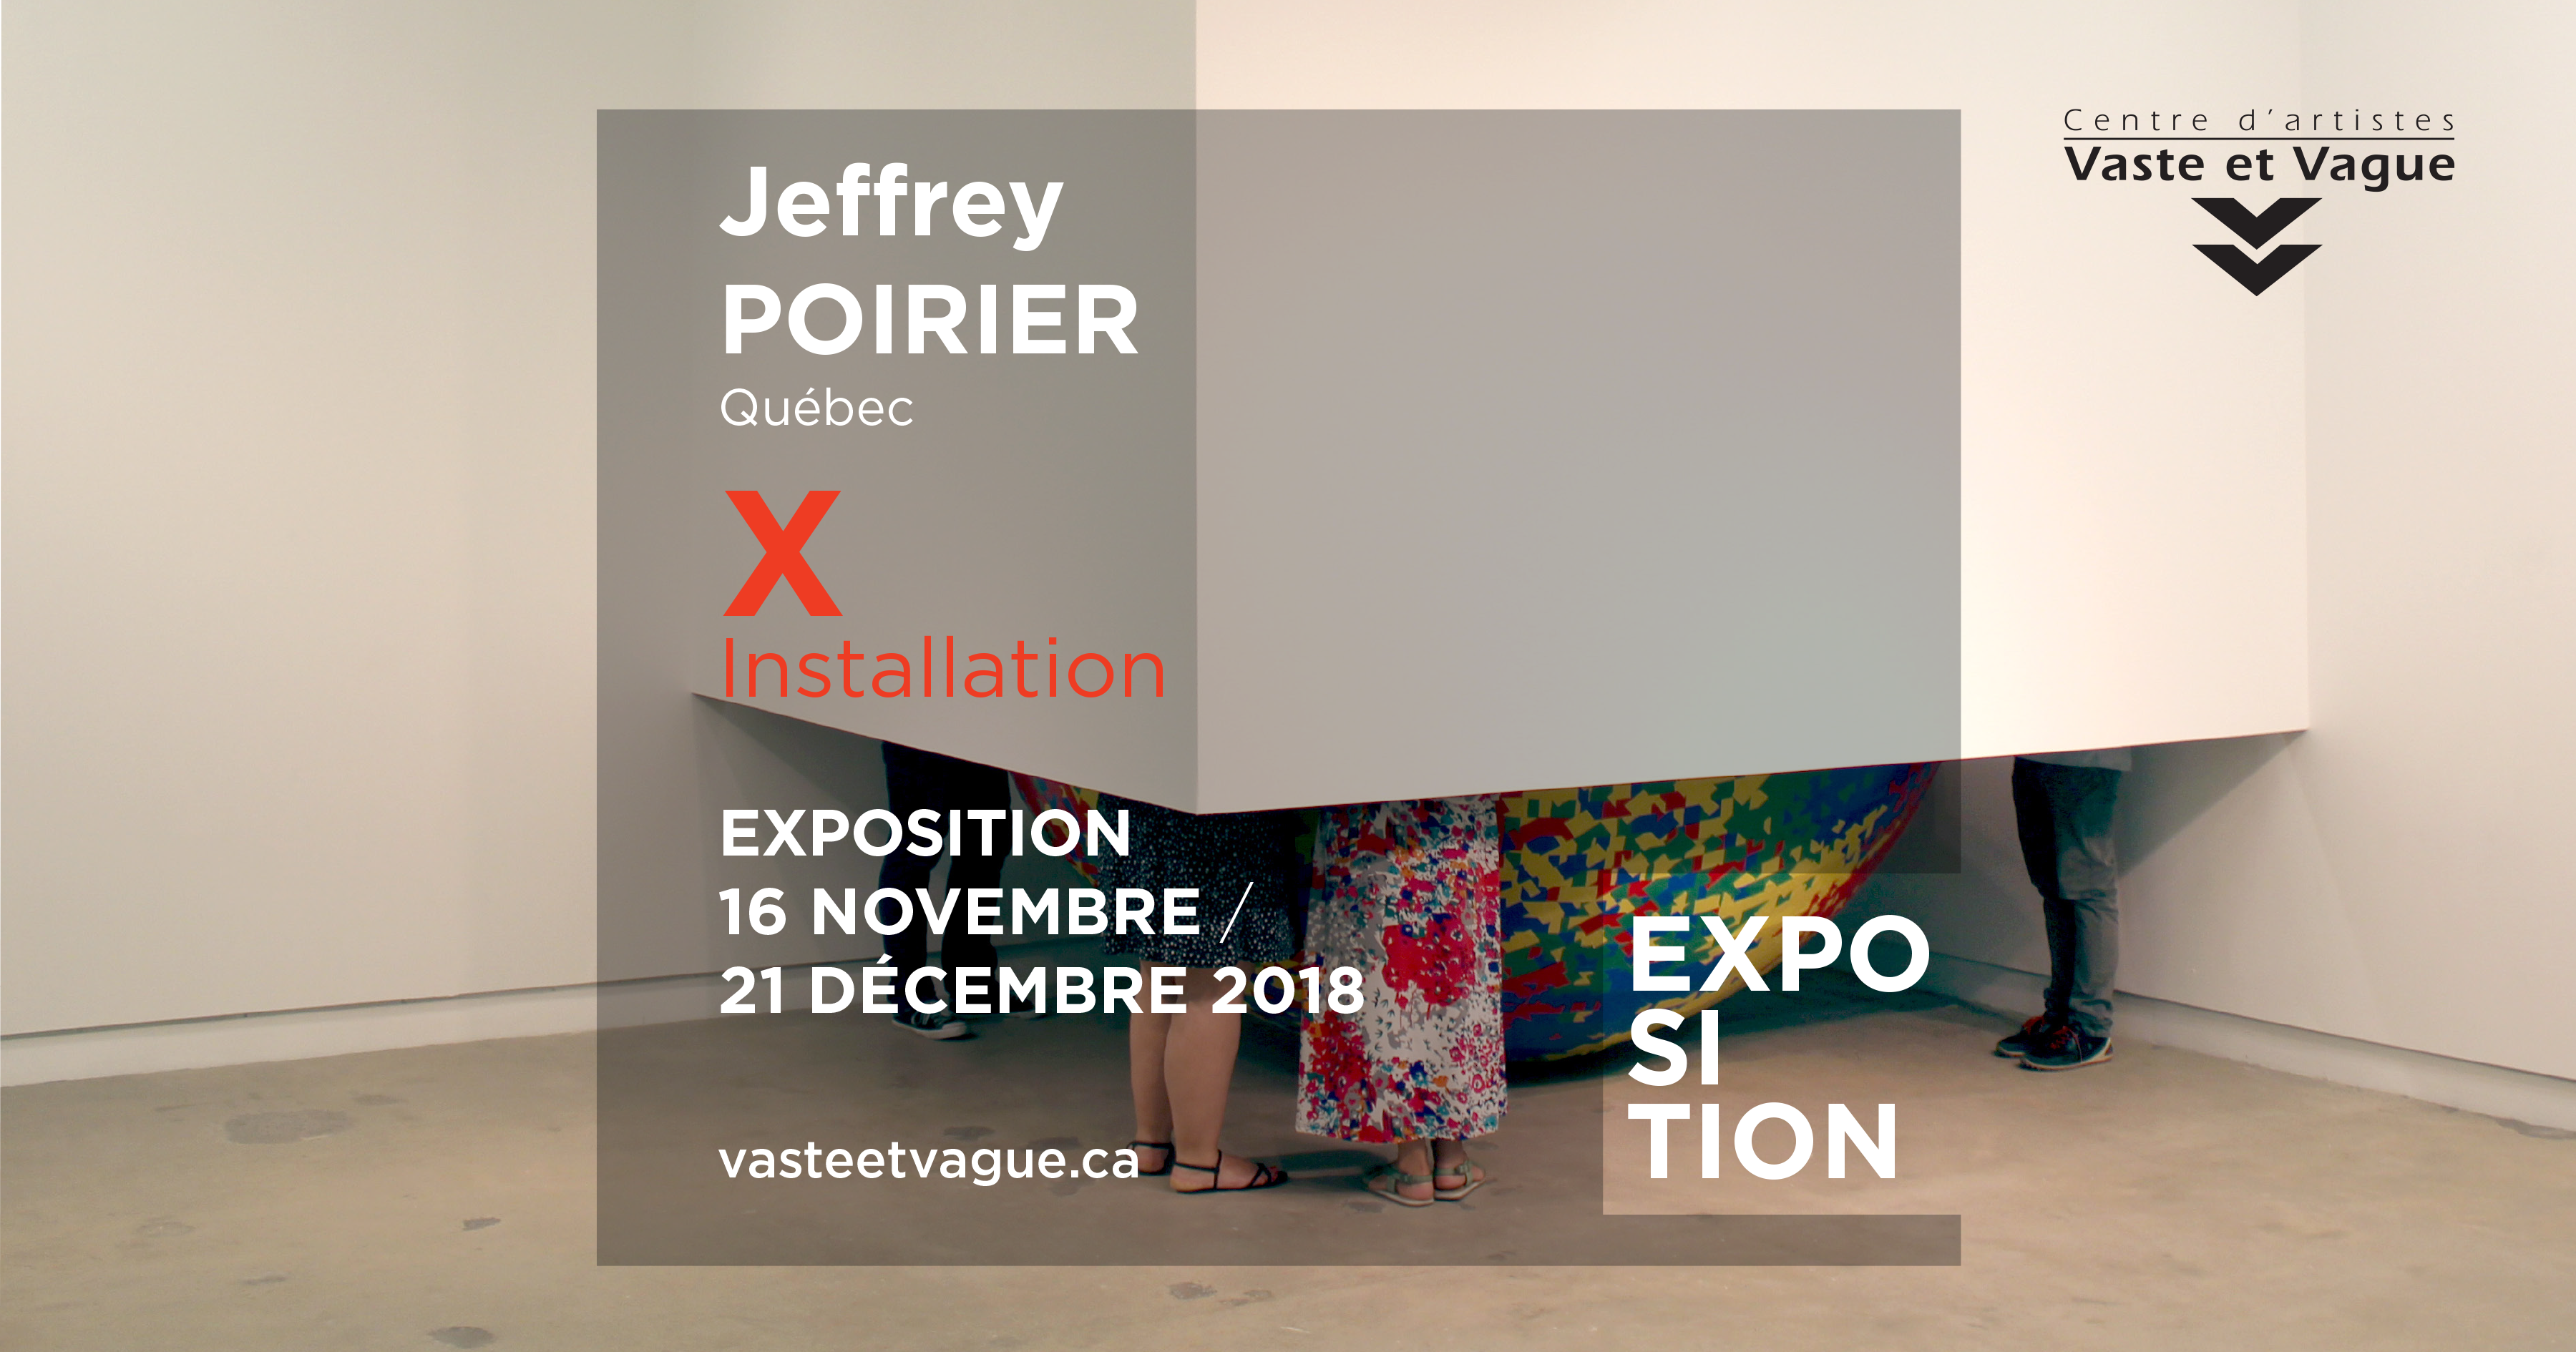 Jeffrey POIRIER, Québec | X | Installation | Centre d'artistes Vaste et Vague